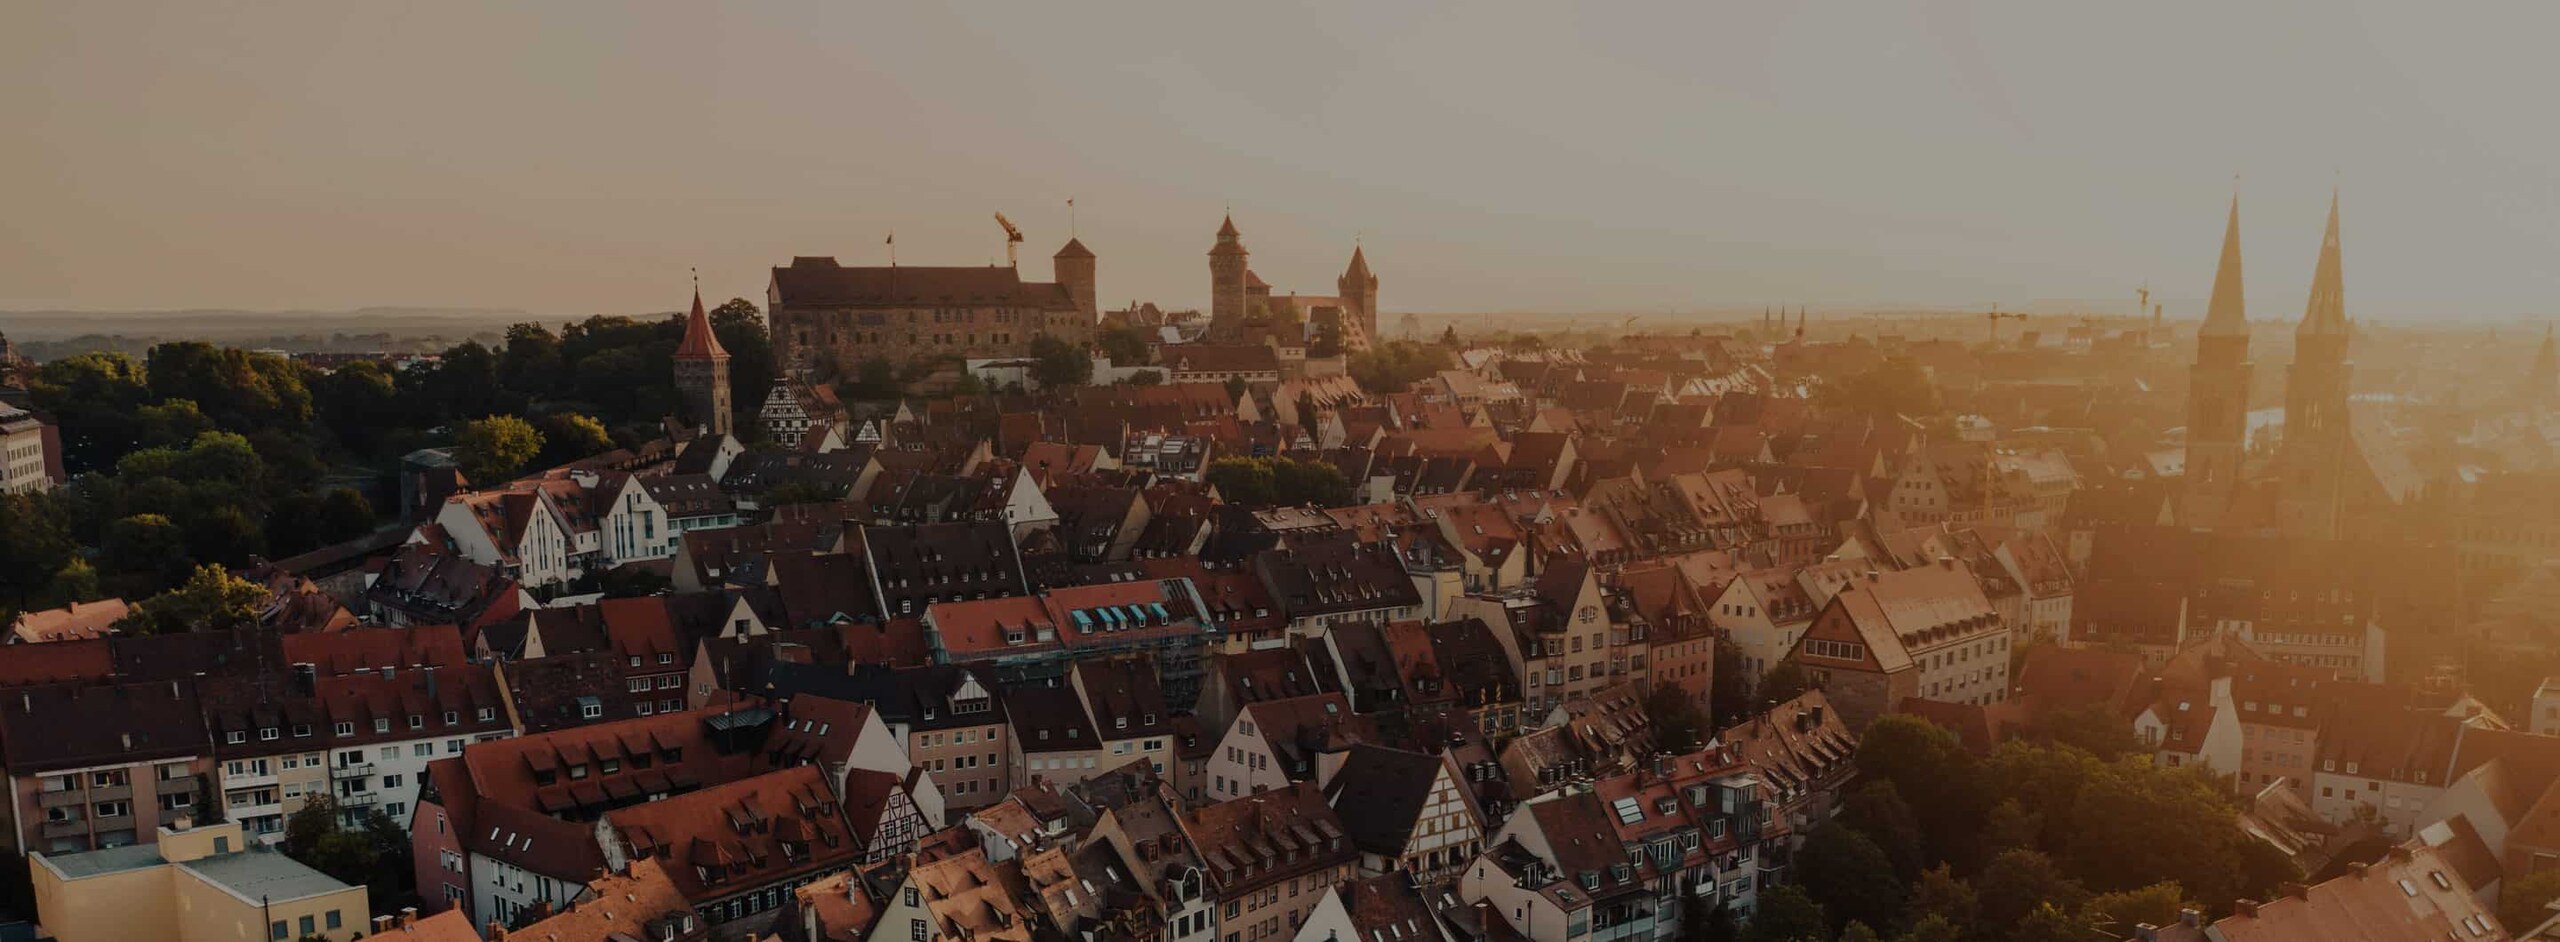 Über der Nürnberger Altstadt thront die Kaiserburg, Panoramaaufnahme im Abendlicht